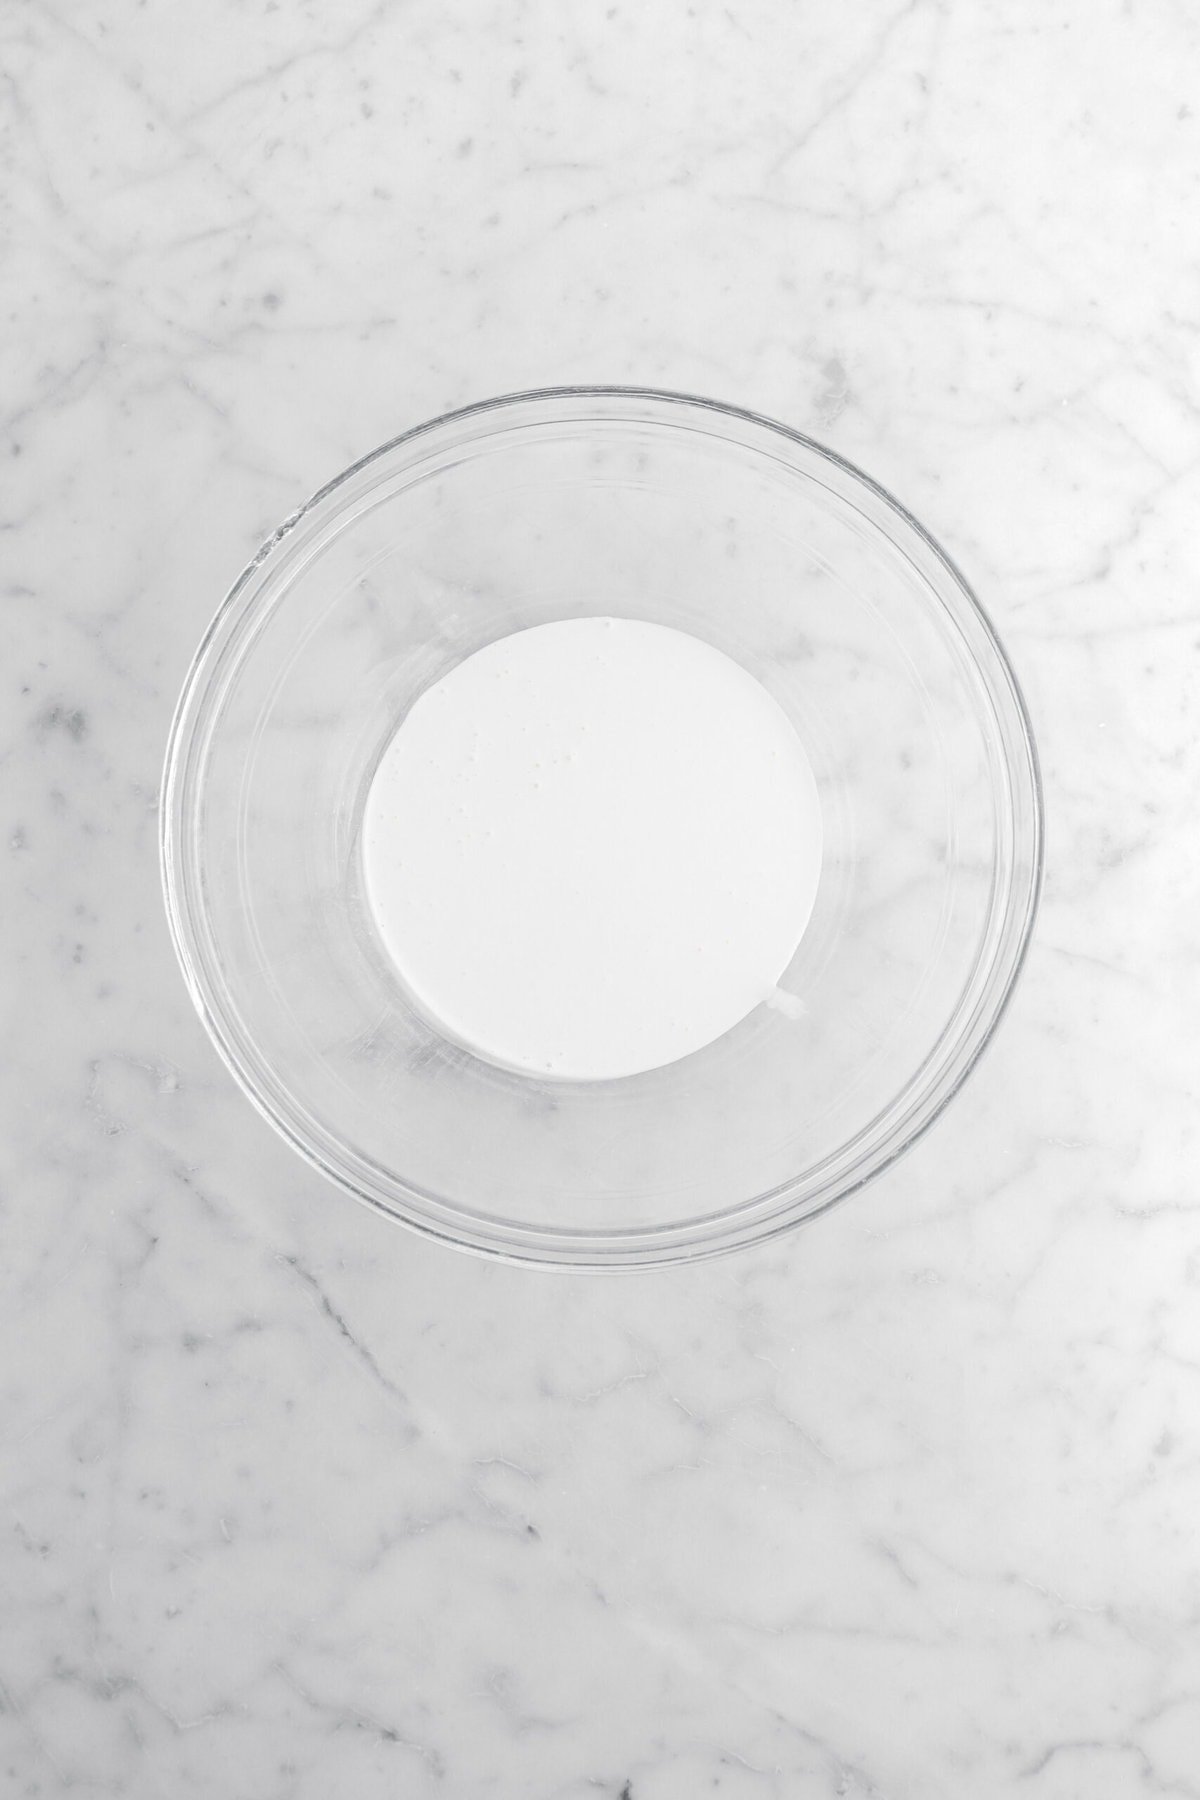 cream in glass bowl.